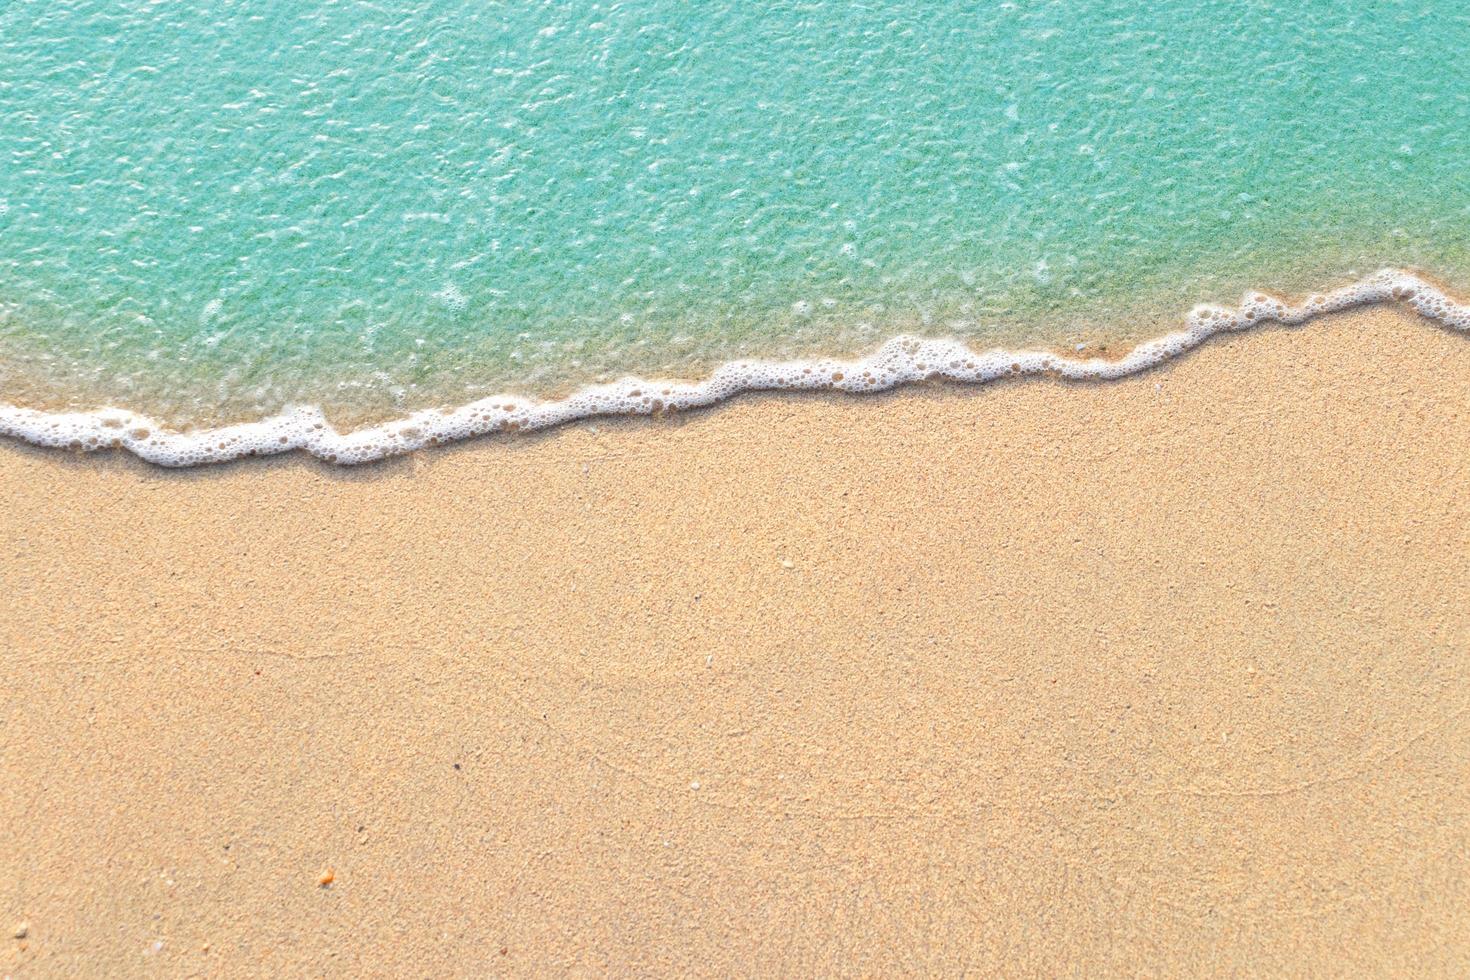 vagues douces avec de la mousse de l'océan bleu sur la plage de sable photo